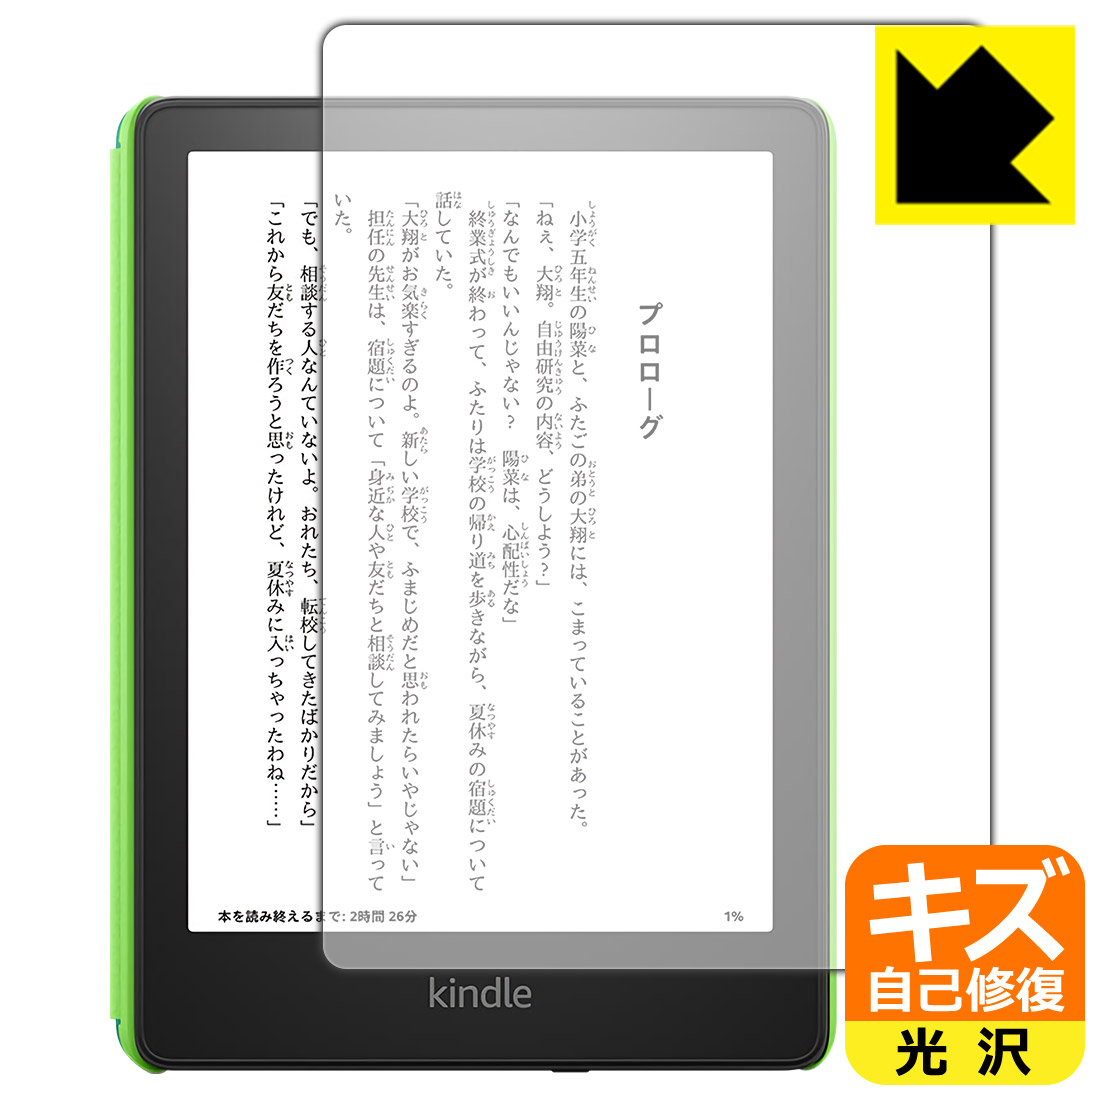 【自己修復タイプ(光沢)】Kindle Paperwhite キッズモデル (2021年11月発売モデル) 専用保護フィルム(保護シート) キズ自己修復保護フィルム Kindle Paperwhite キッズモデル (2021年11月発売モデル) 日本製 自社製造直販